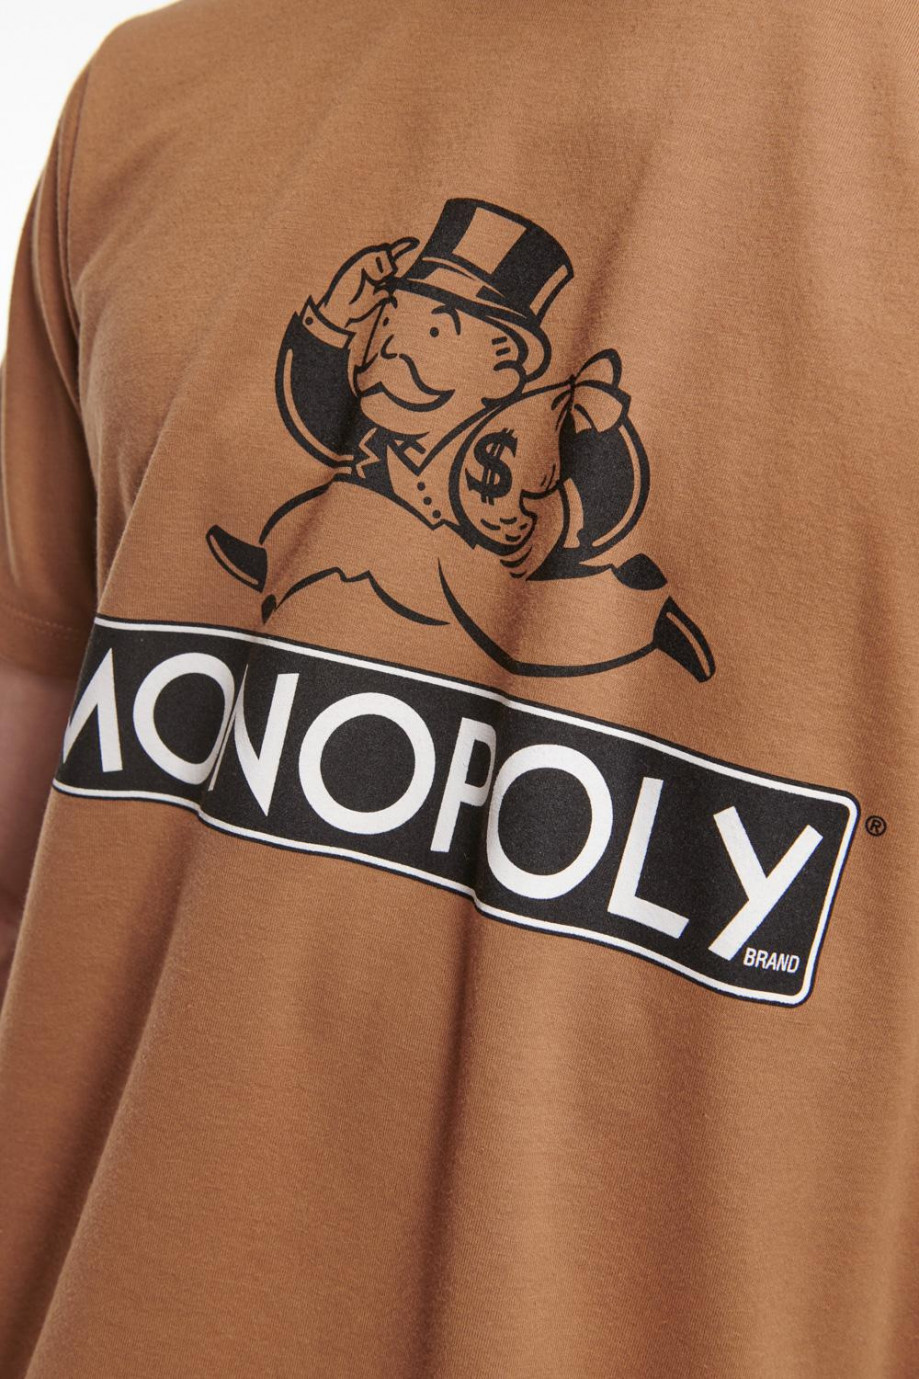 Camiseta manga corta, estampado de Monopolio.